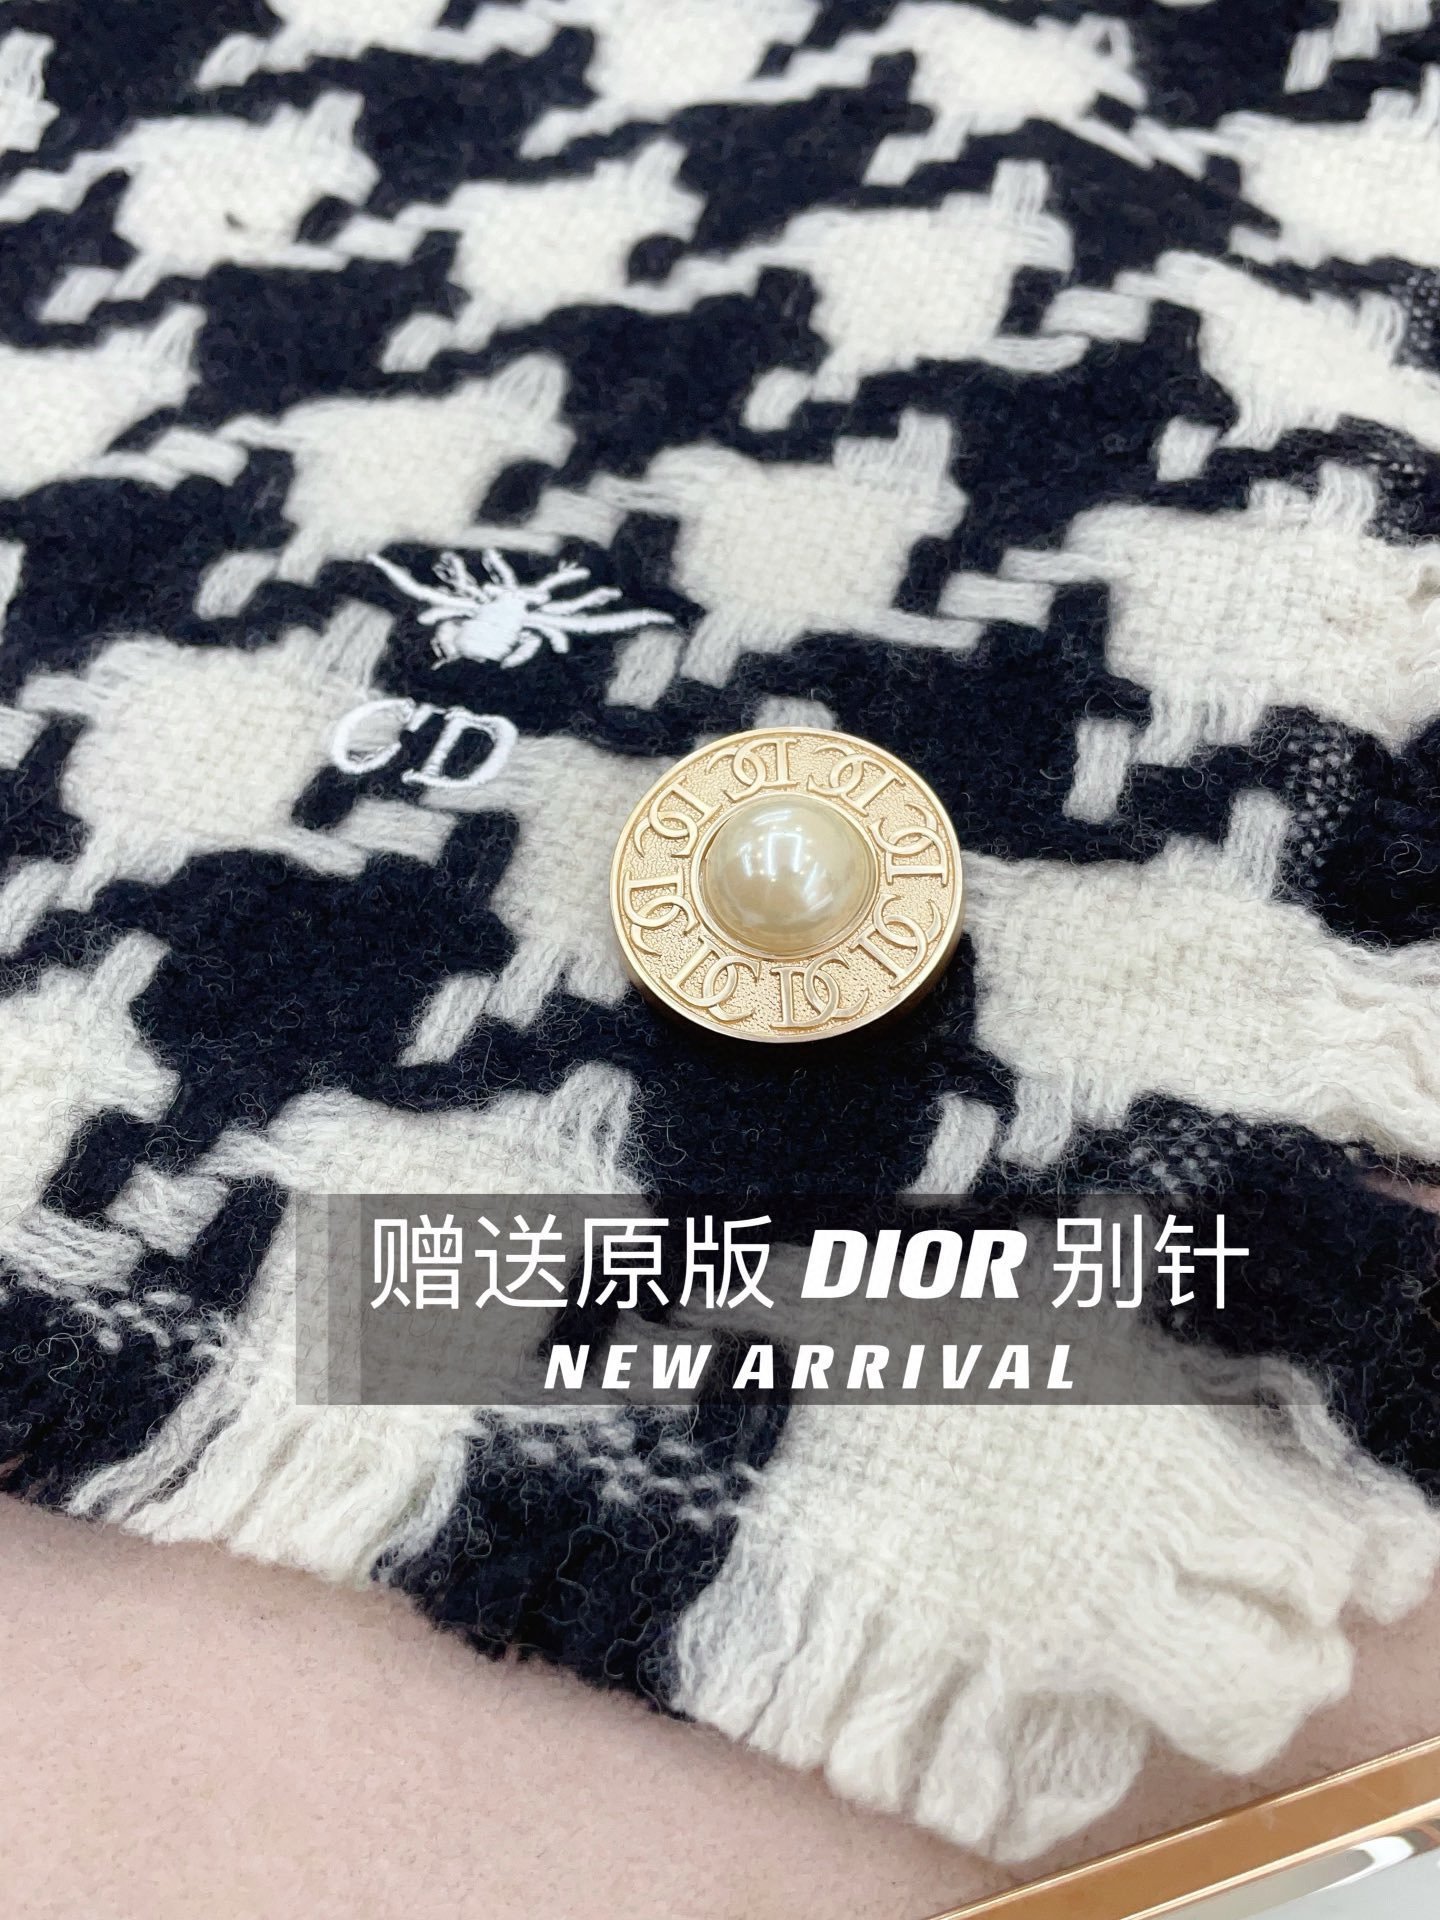 配送胸针Dior超美新款大千鸟围巾！超级推荐入手！质感好货！Dior主打的千鸟纹理据说超难买哦！！我们的